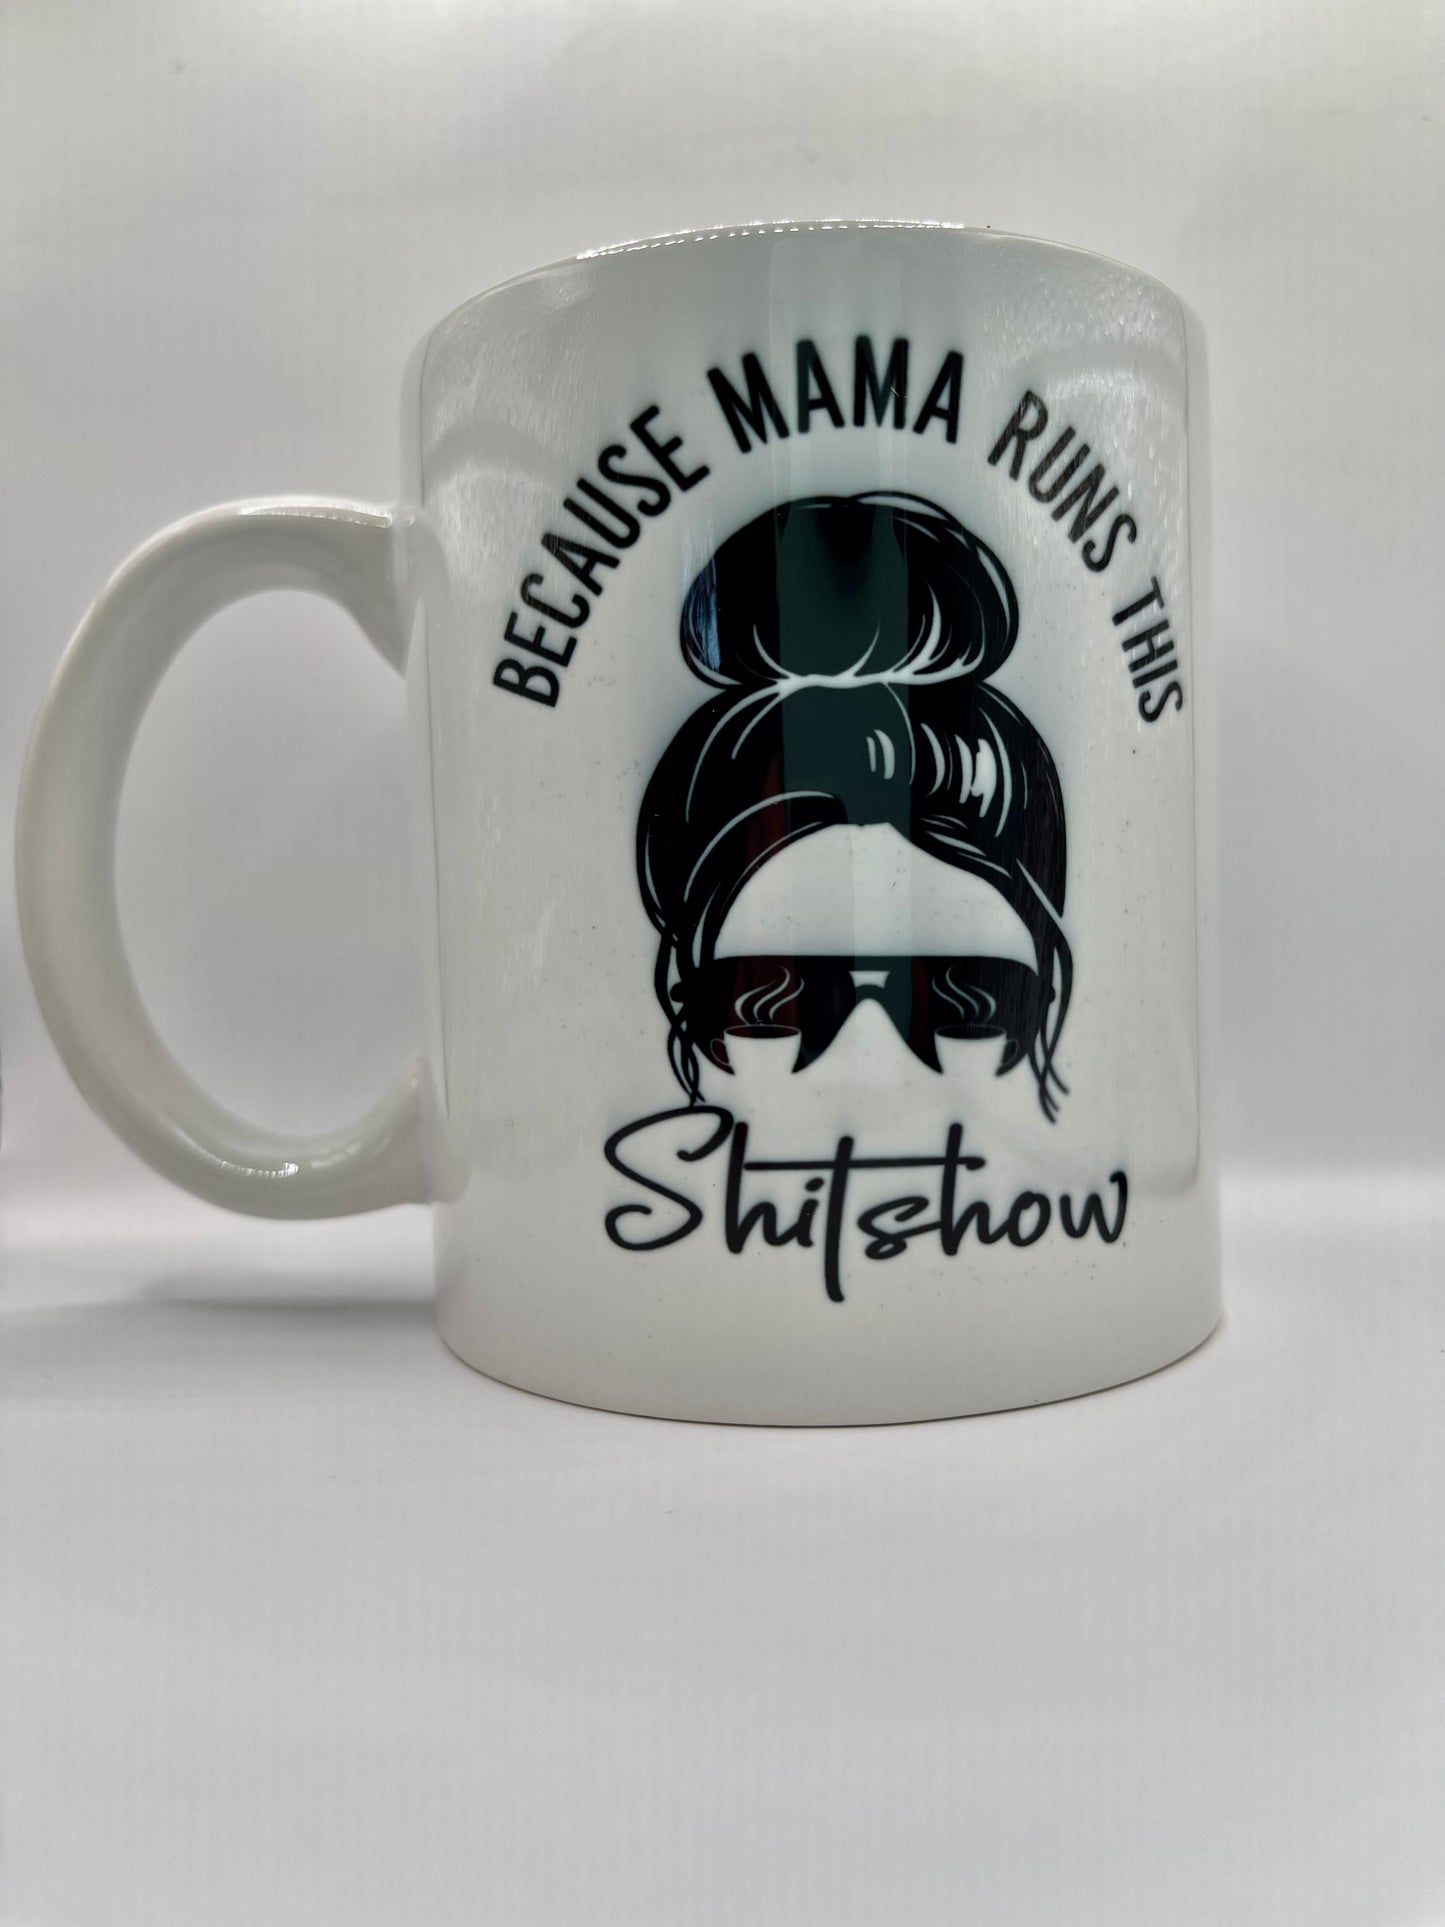 Mama runs this shitshow, mug